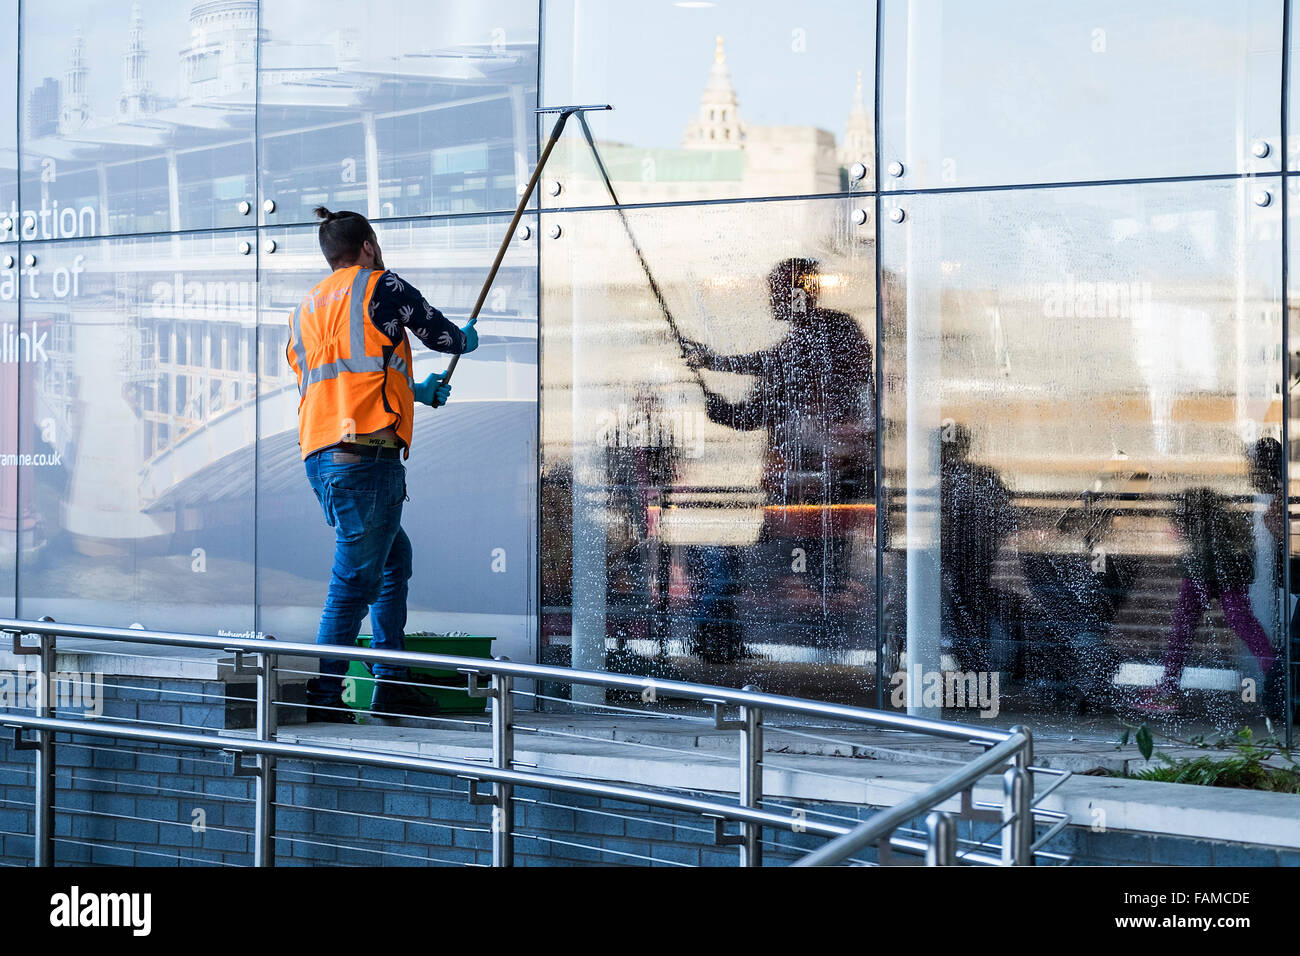 Nettoyant au travail - un travailleur nettoyer les fenêtres de Blackfriars Station sur la rive sud de Londres. Banque D'Images